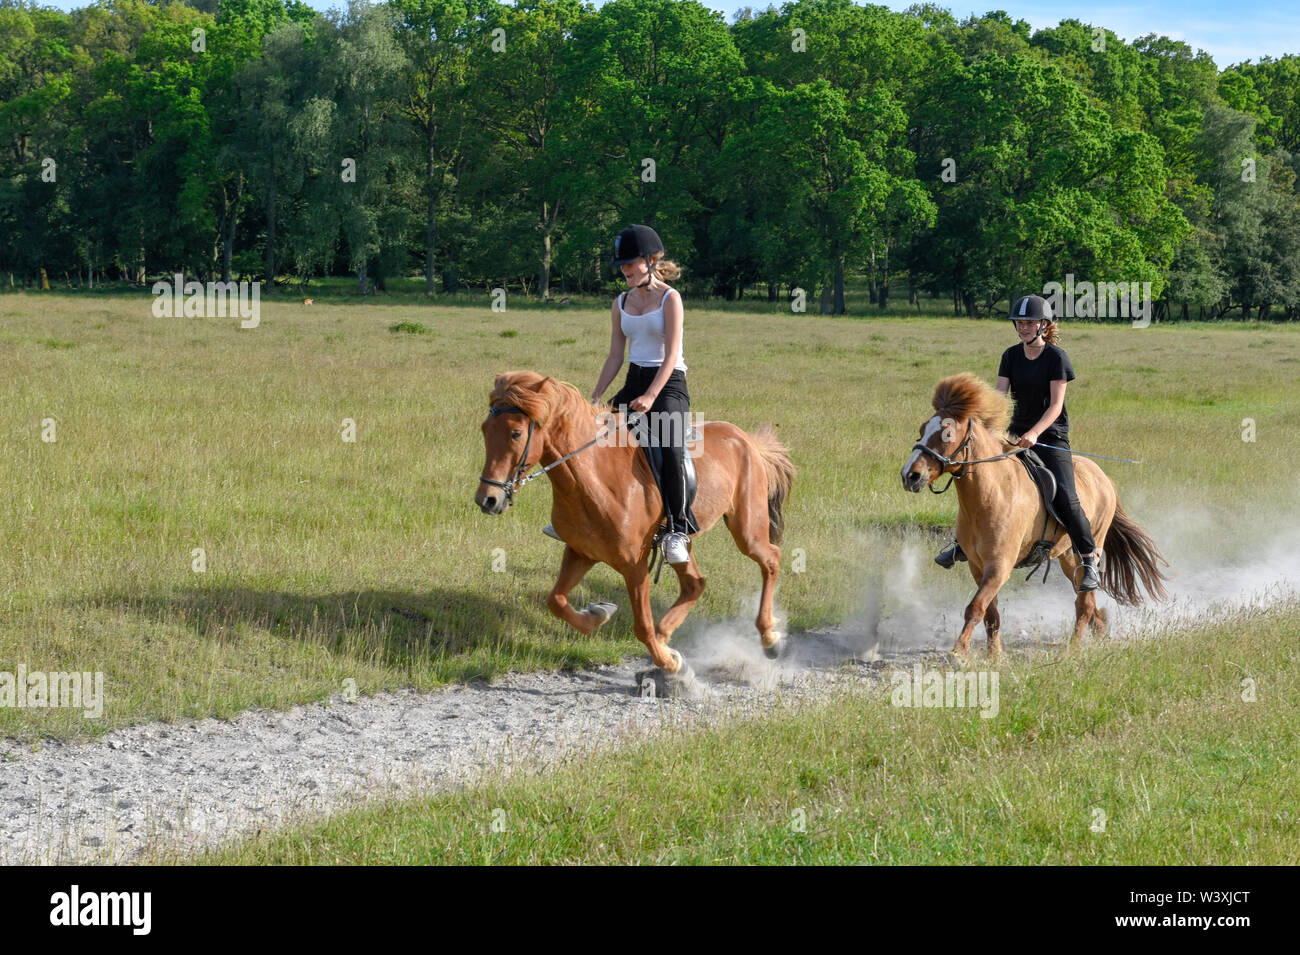 Copenhagen Denmark - 24 June 2019: two girls riding galloping horses on a natural park of Copenhagen in Denmark Stock Photo